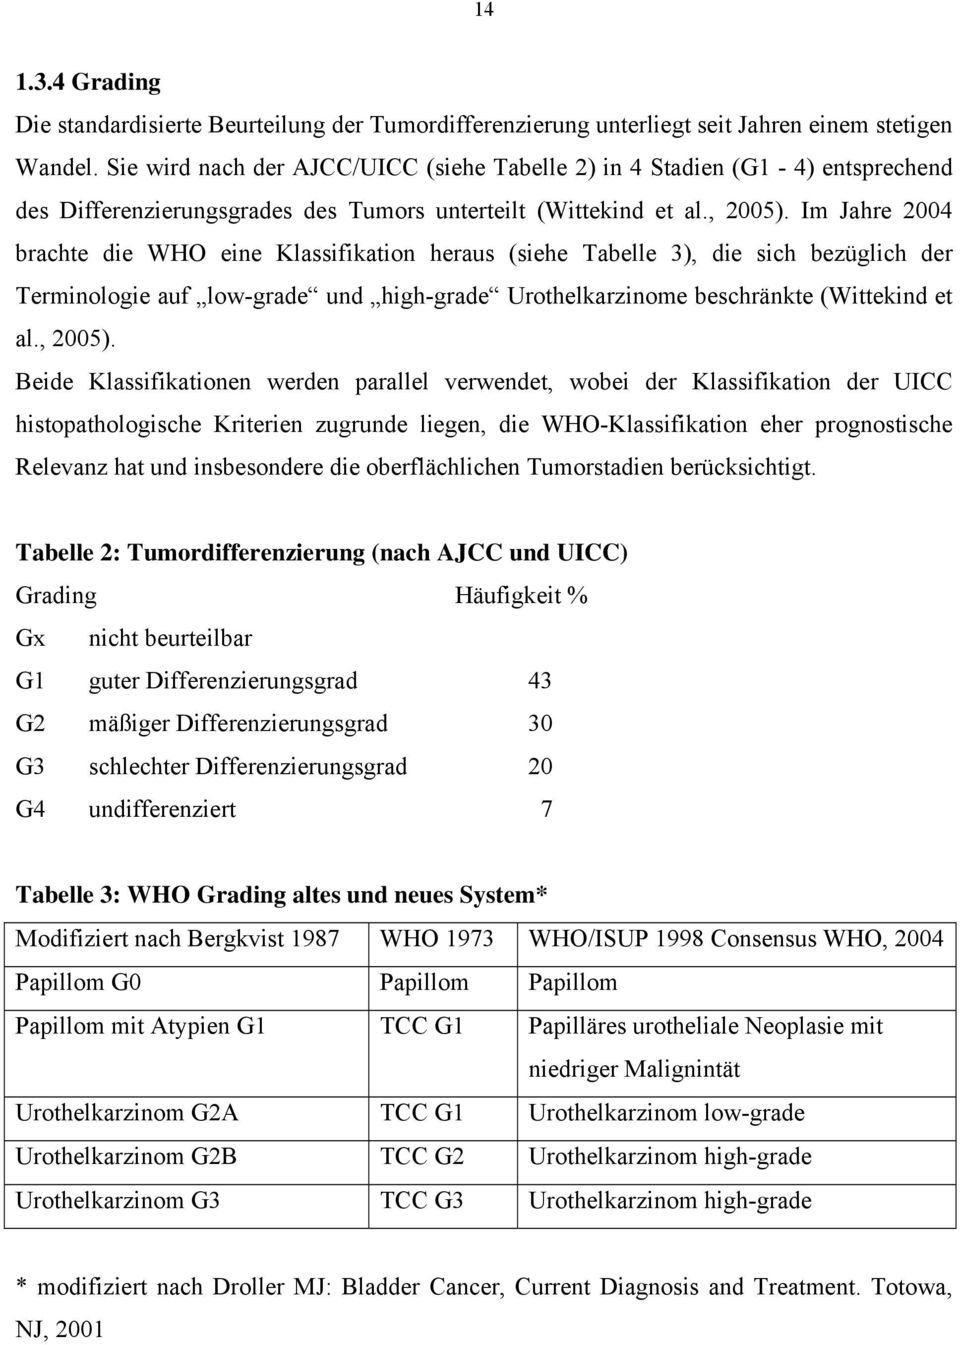 Im Jahre 2004 brachte die WHO eine Klassifikation heraus (siehe Tabelle 3), die sich bezüglich der Terminologie auf lowgrade und highgrade Urothelkarzinome beschränkte (Wittekind et al., 2005).